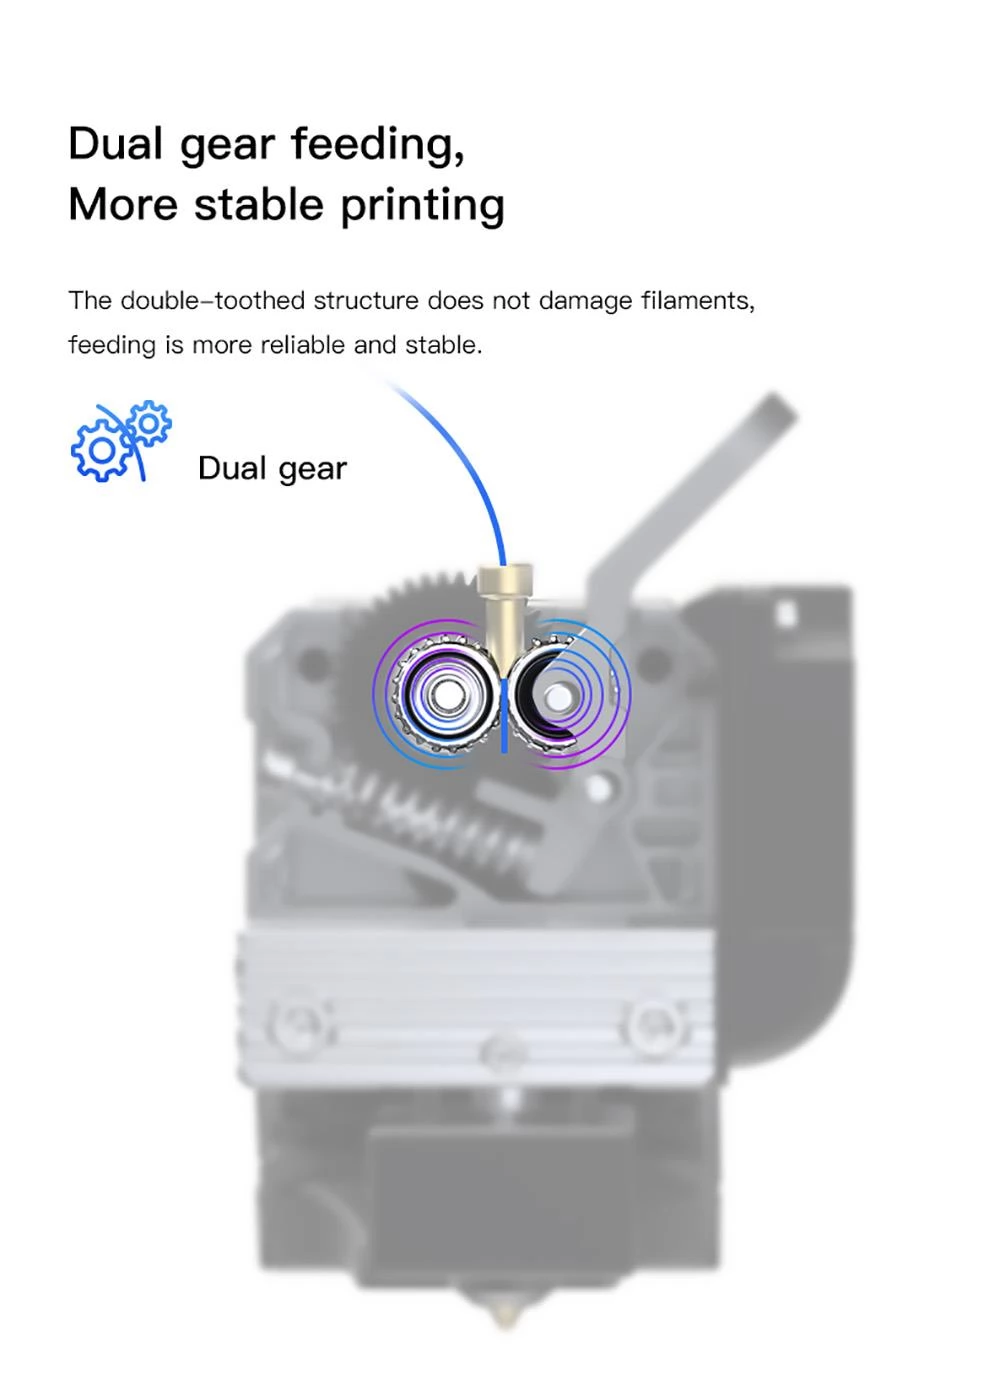 Creality Sprite Extruder Pro Kit 300°C Hochtemperaturdruck für Ender 3 S1 /S1 PRO CR10 Smart Pro 3D-Drucker